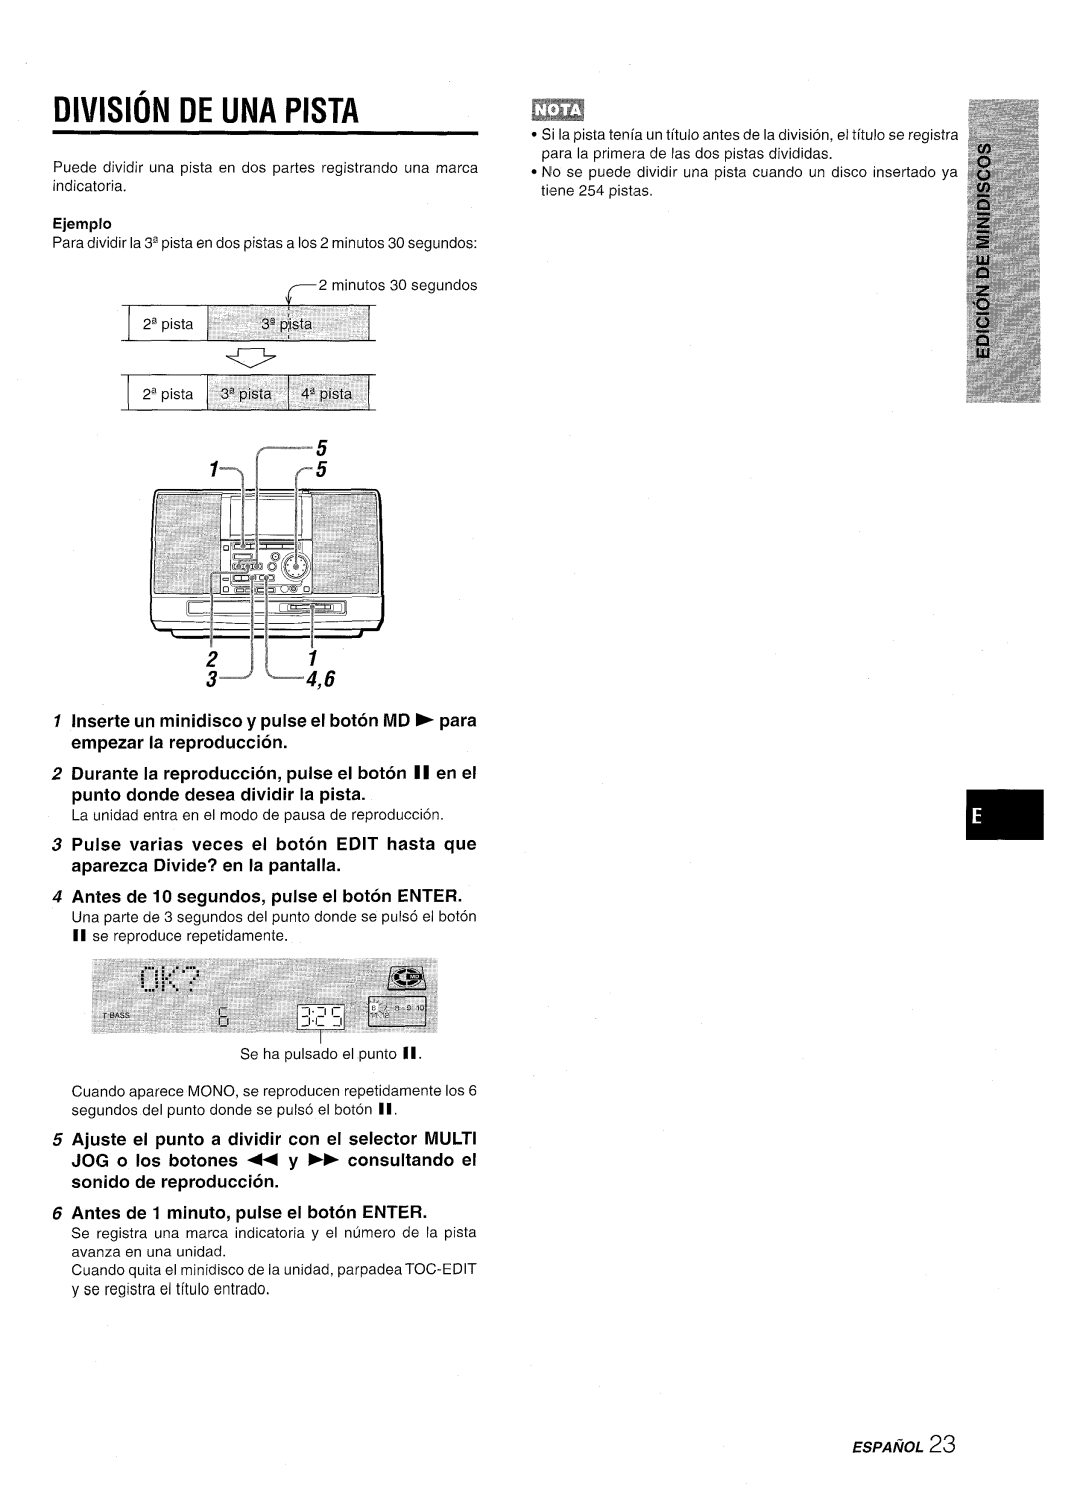 Aiwa CSD-MD50 manual ZJ3 L,6, Division De Una Pista 